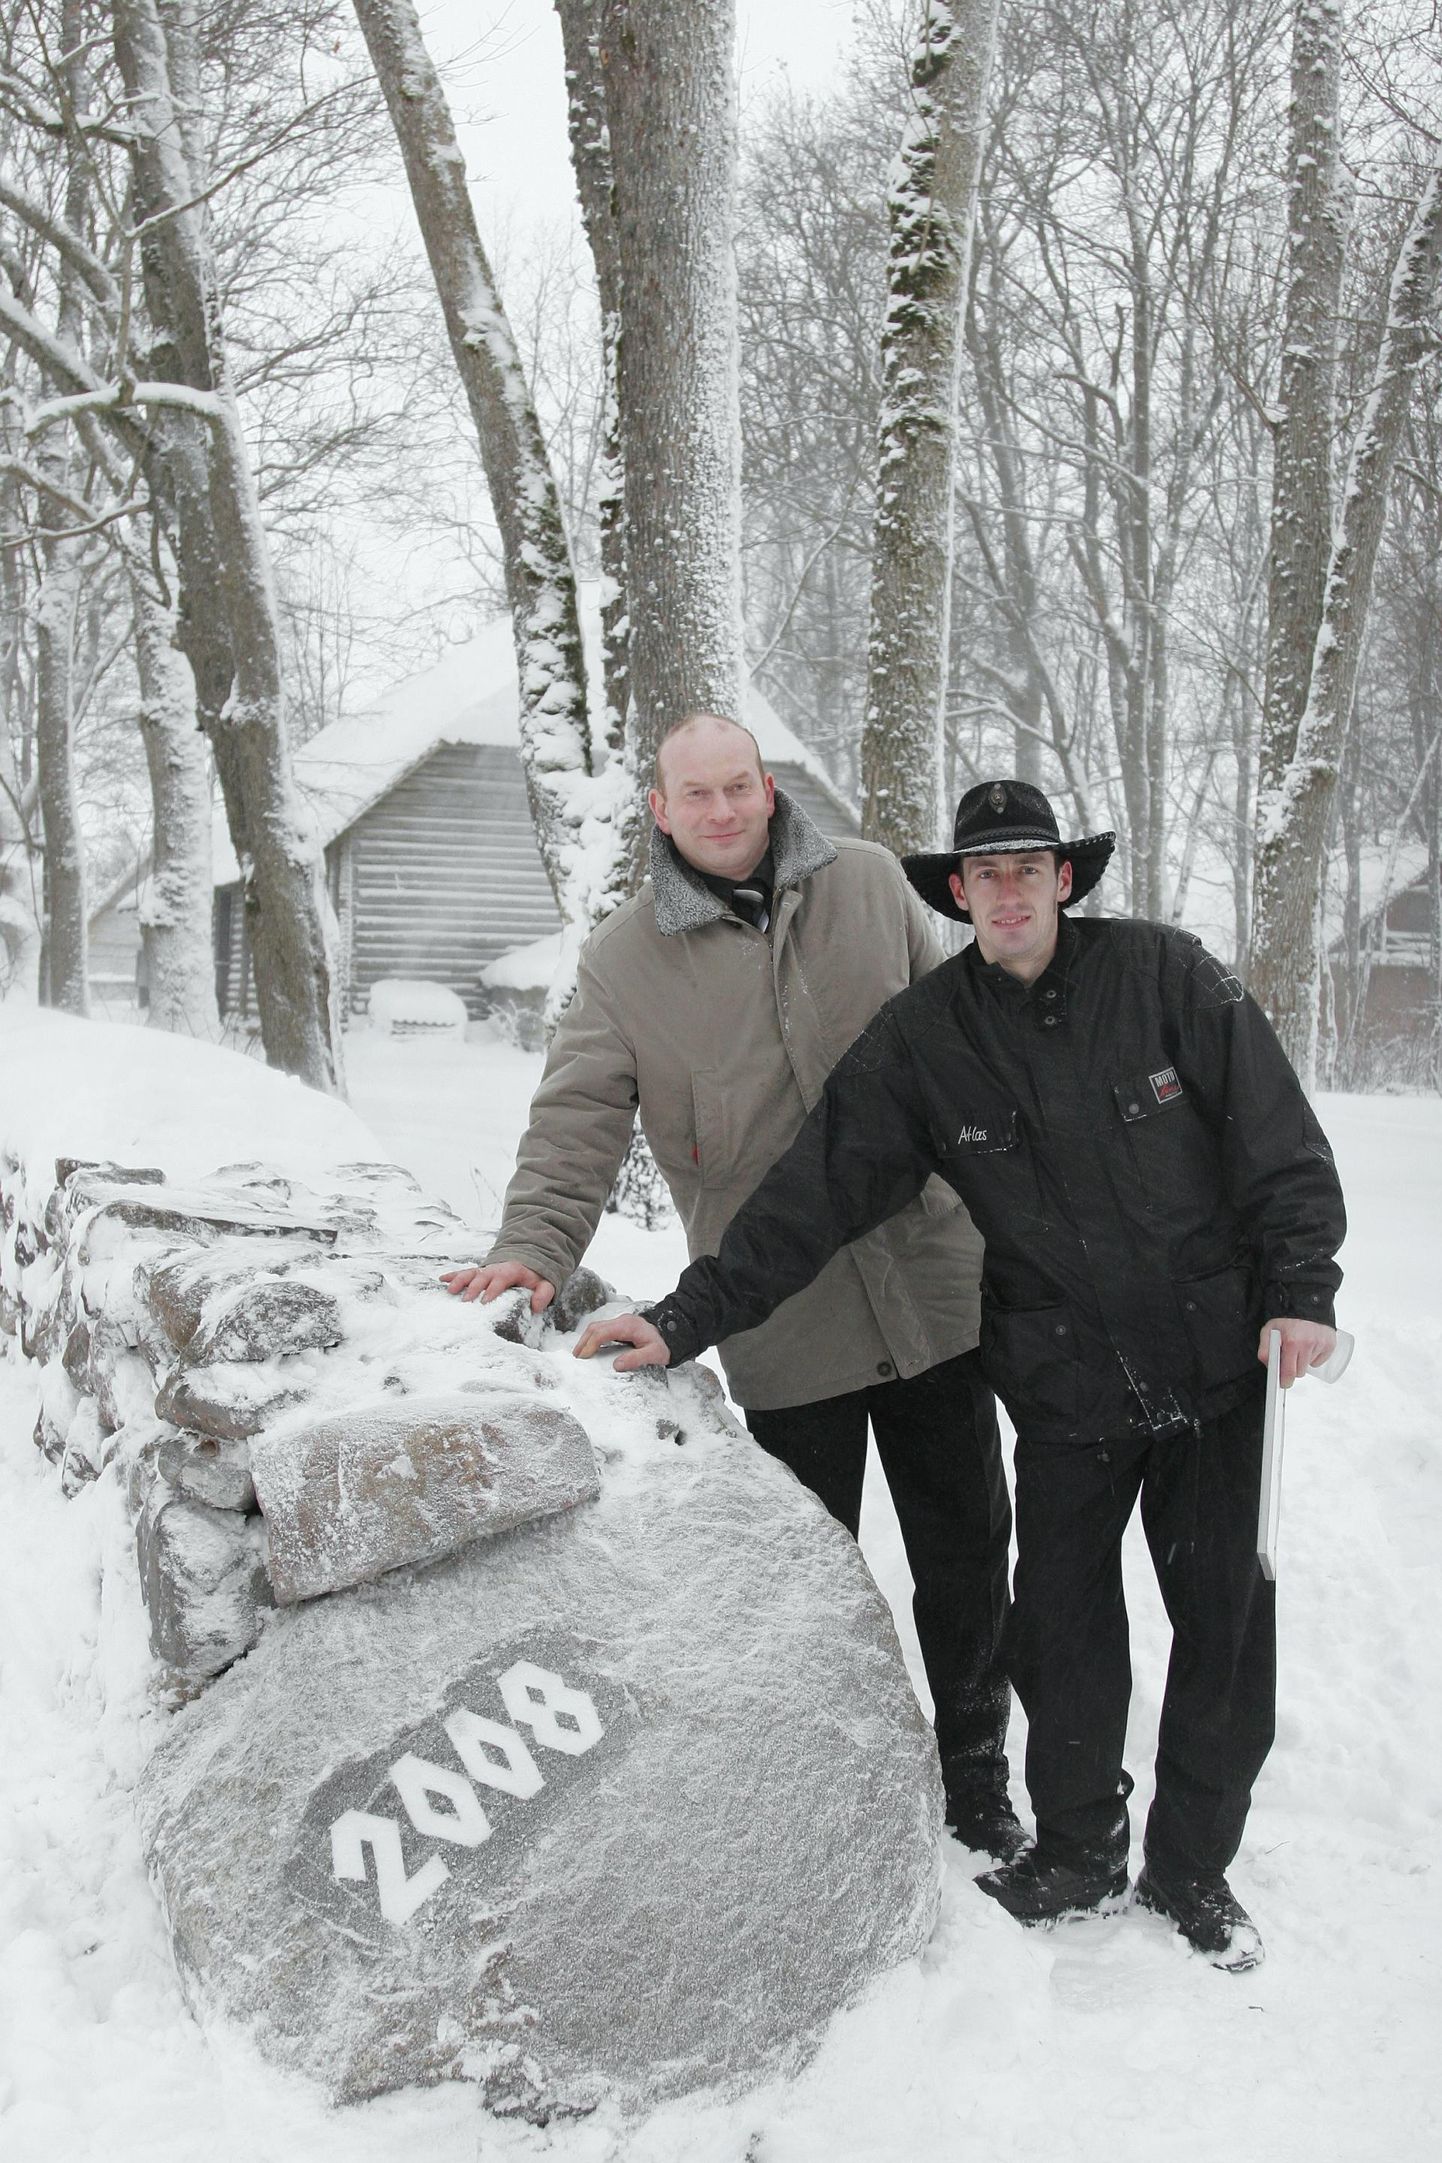 Sürgavere külaselts on aegade jooksul palju korda saatnud. 2008. aastal taastati nende algatusel kiviaed, mis ümbritseb mõisa südant. Külavanem Raul Espenberg on pildil vasakul, paremal aia taastanud firma juht Janek Tšulkovski.